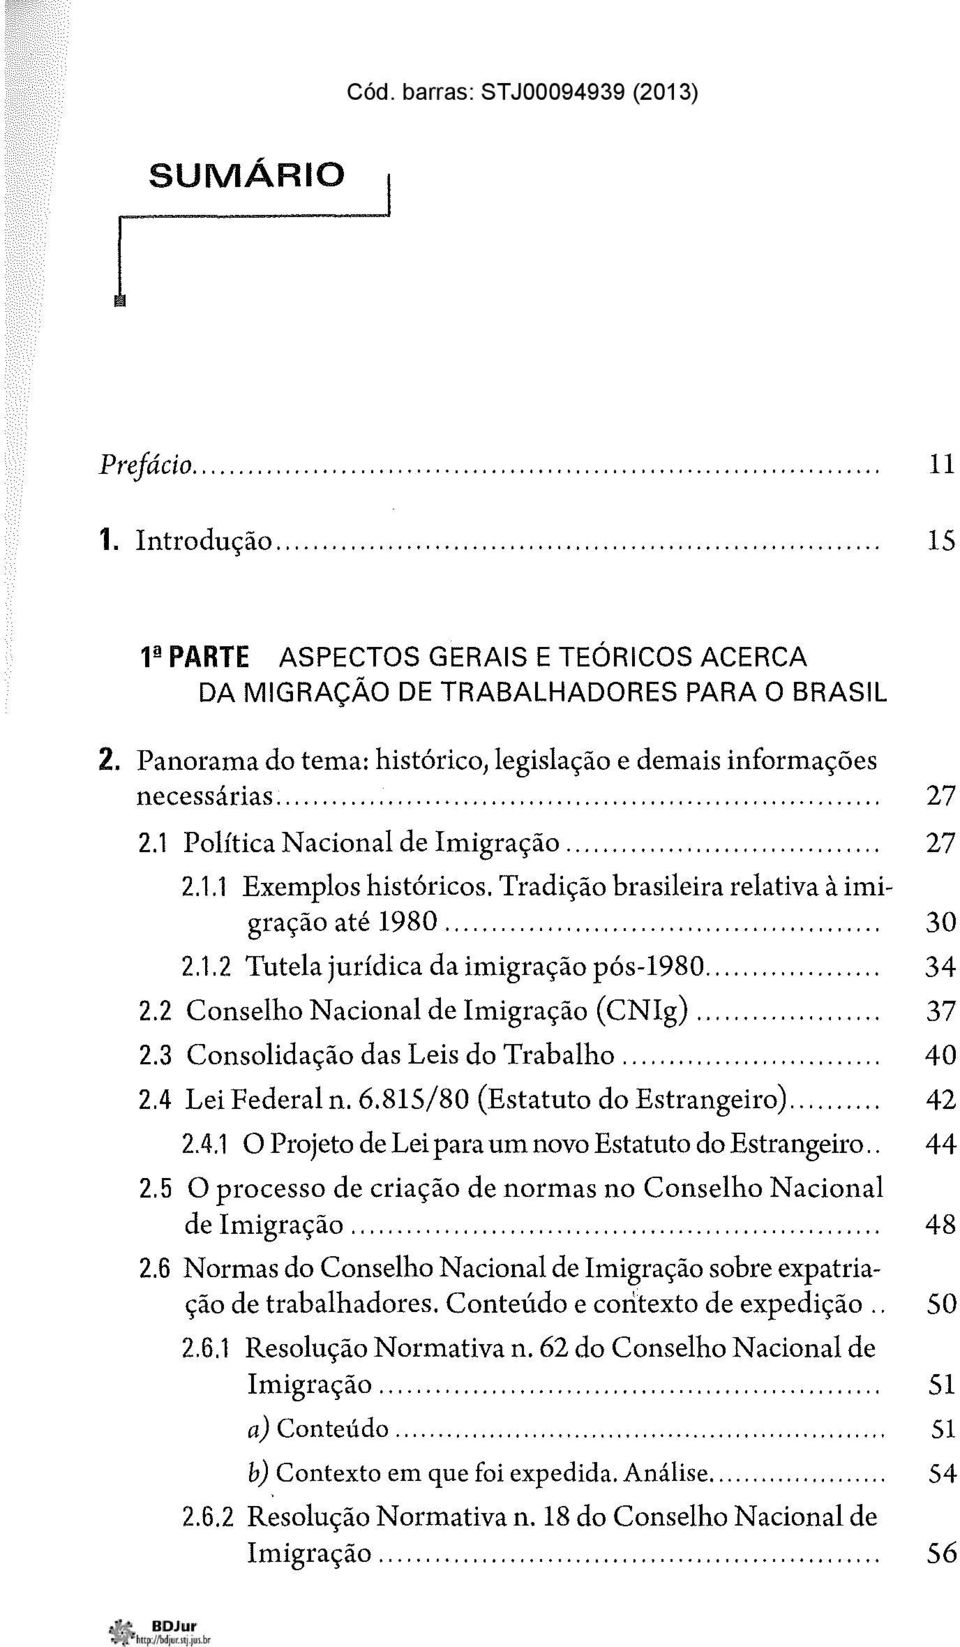 1 Política Nacional de Imigração... 27 2.1.1 Exemplos históricos. Tradição brasileira relativa à imigração até 1980... "................... 30 2.1.2 Tutela jurídica da imigração pós-1980... 34 2.